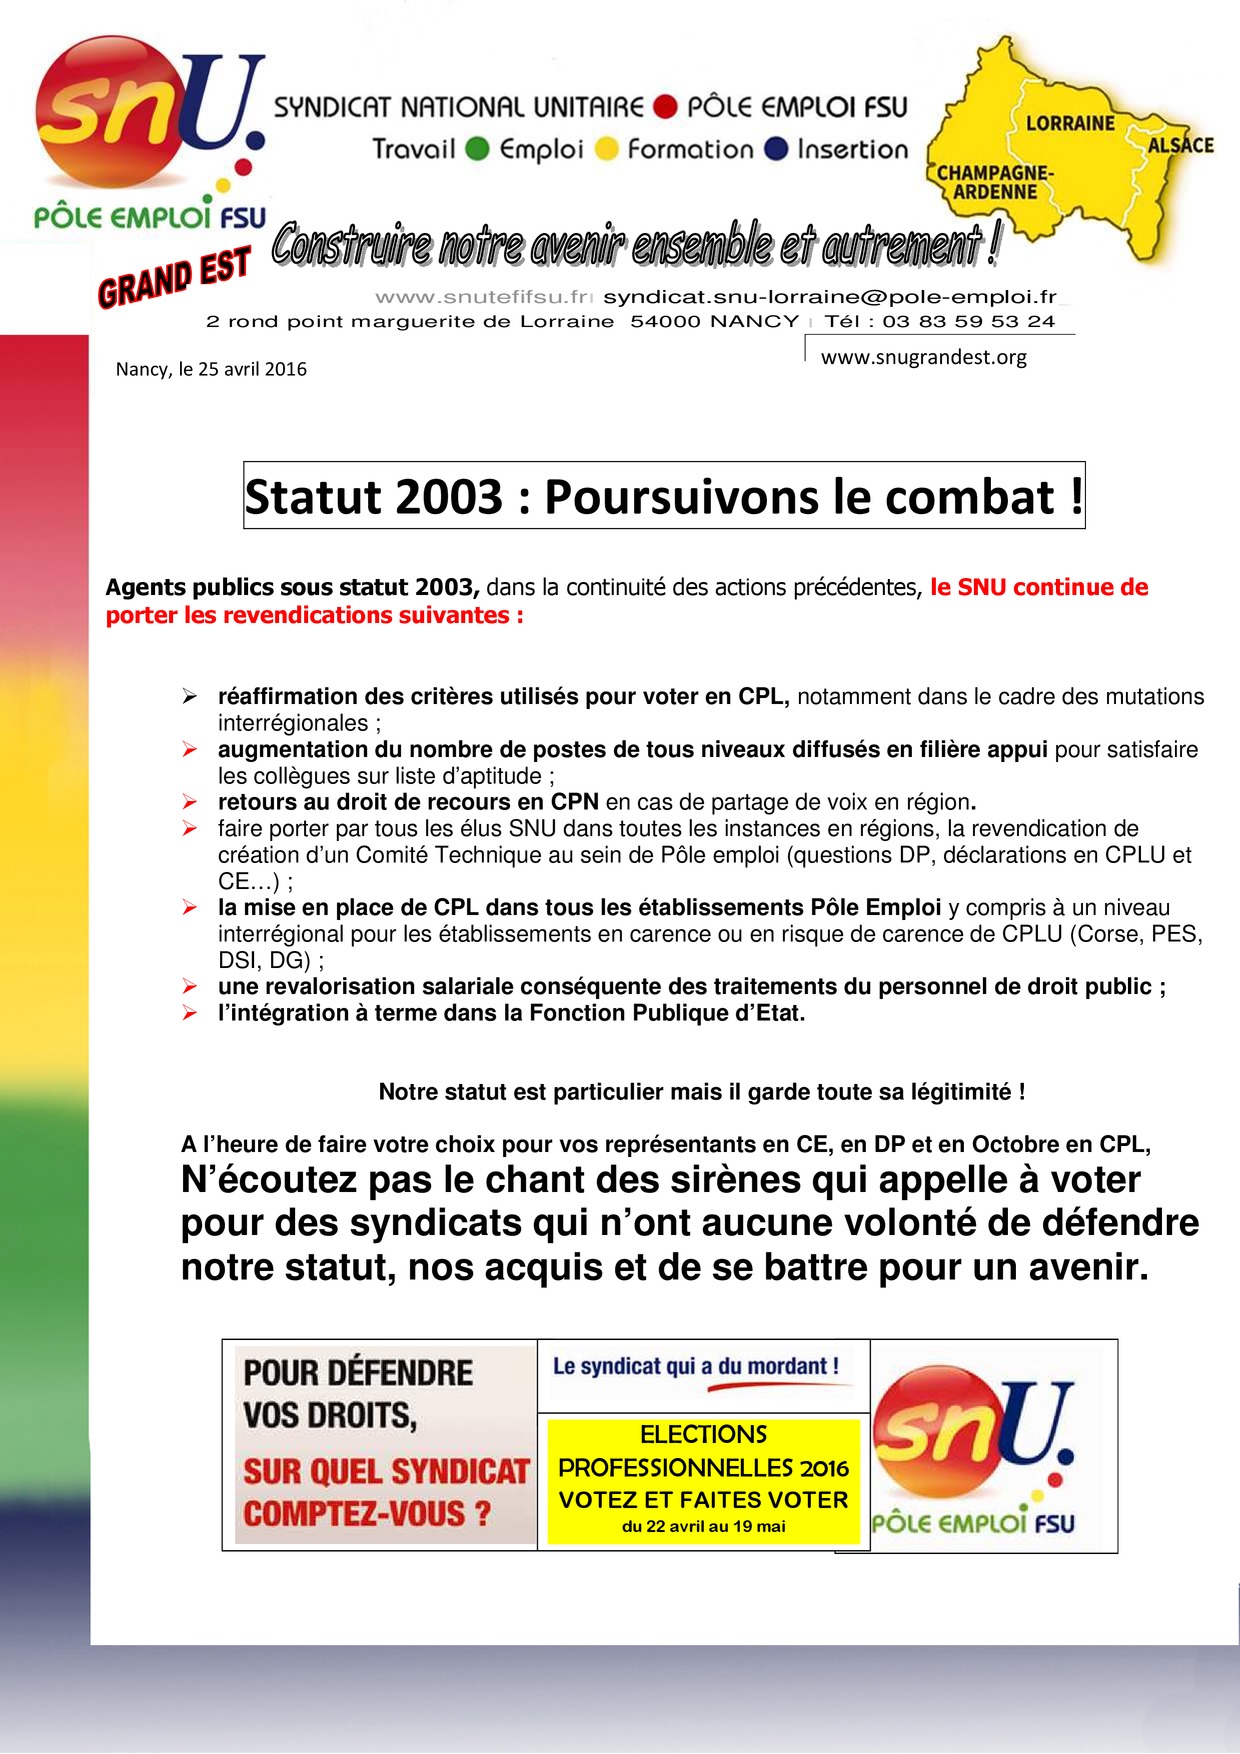 statut_2003_poursuivons_le_combat